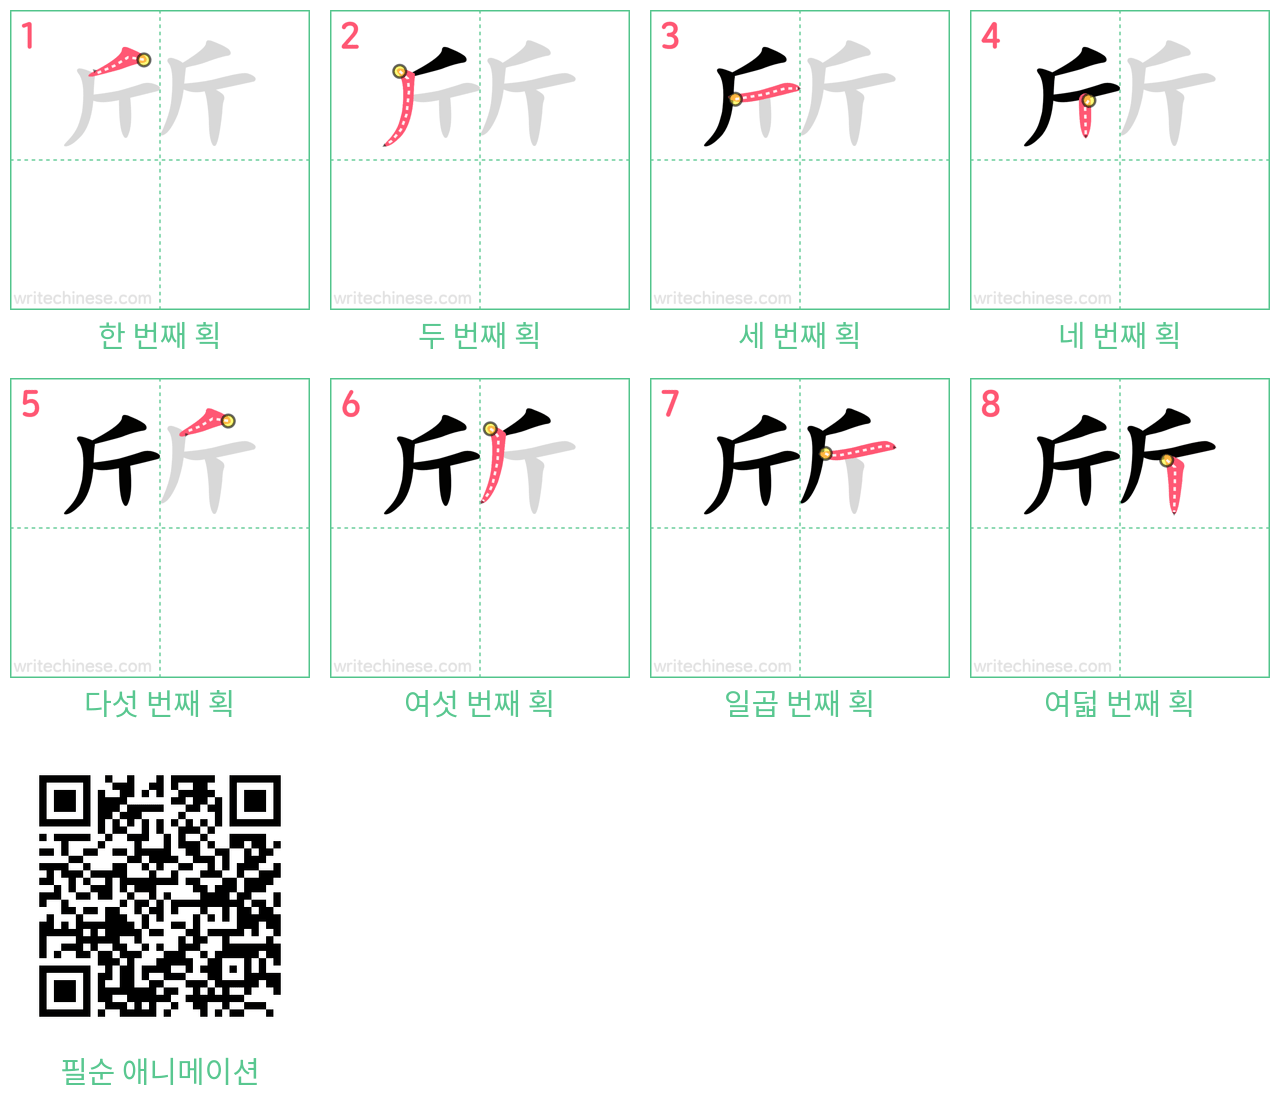 斦 step-by-step stroke order diagrams